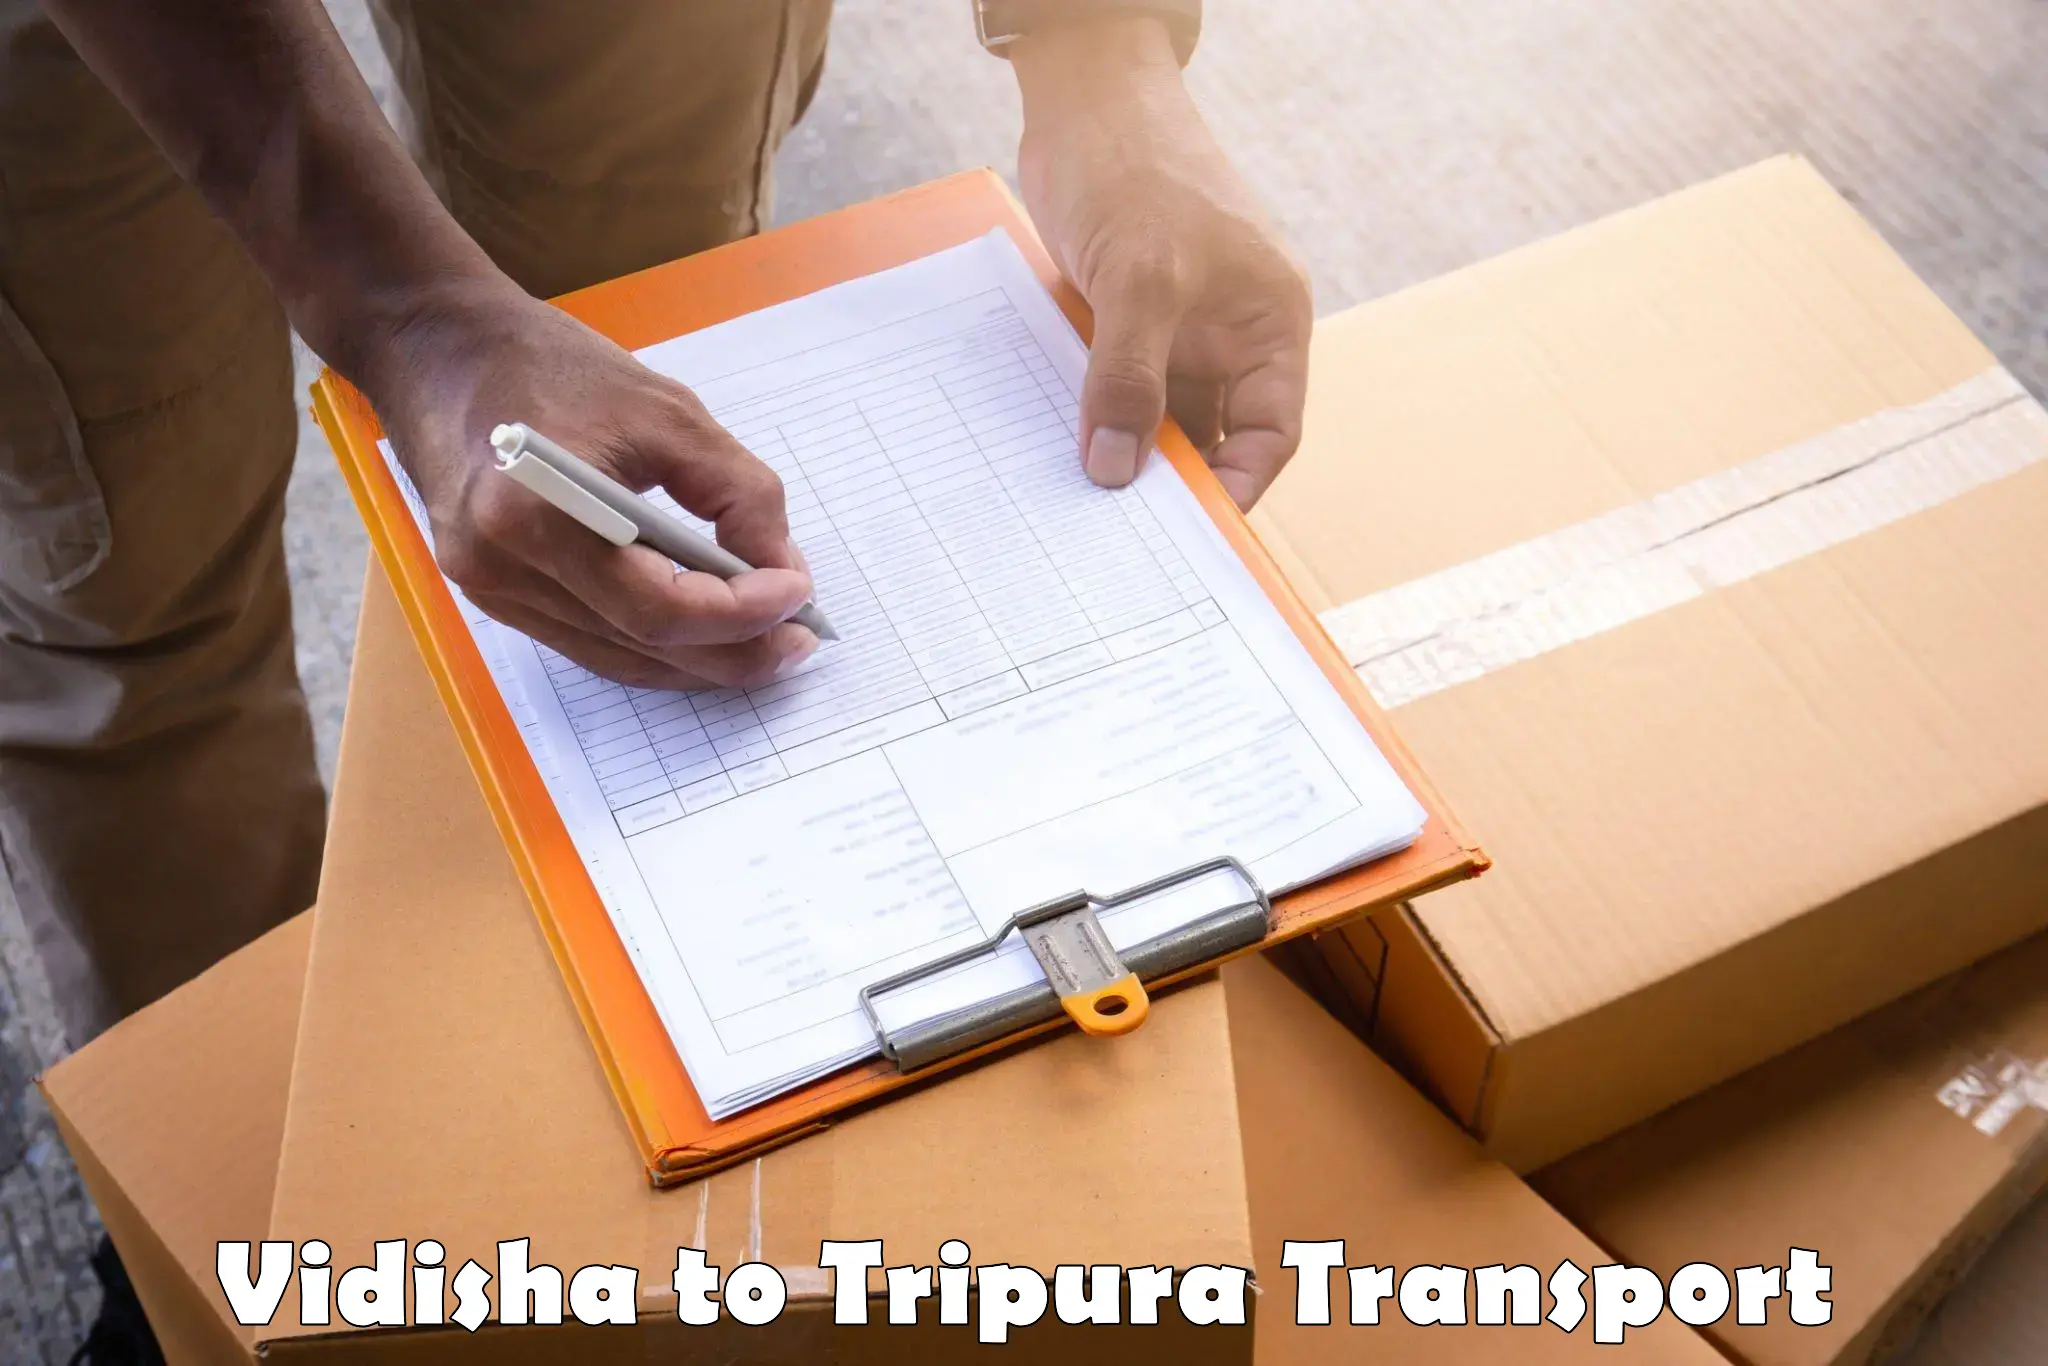 Interstate transport services Vidisha to Udaipur Tripura